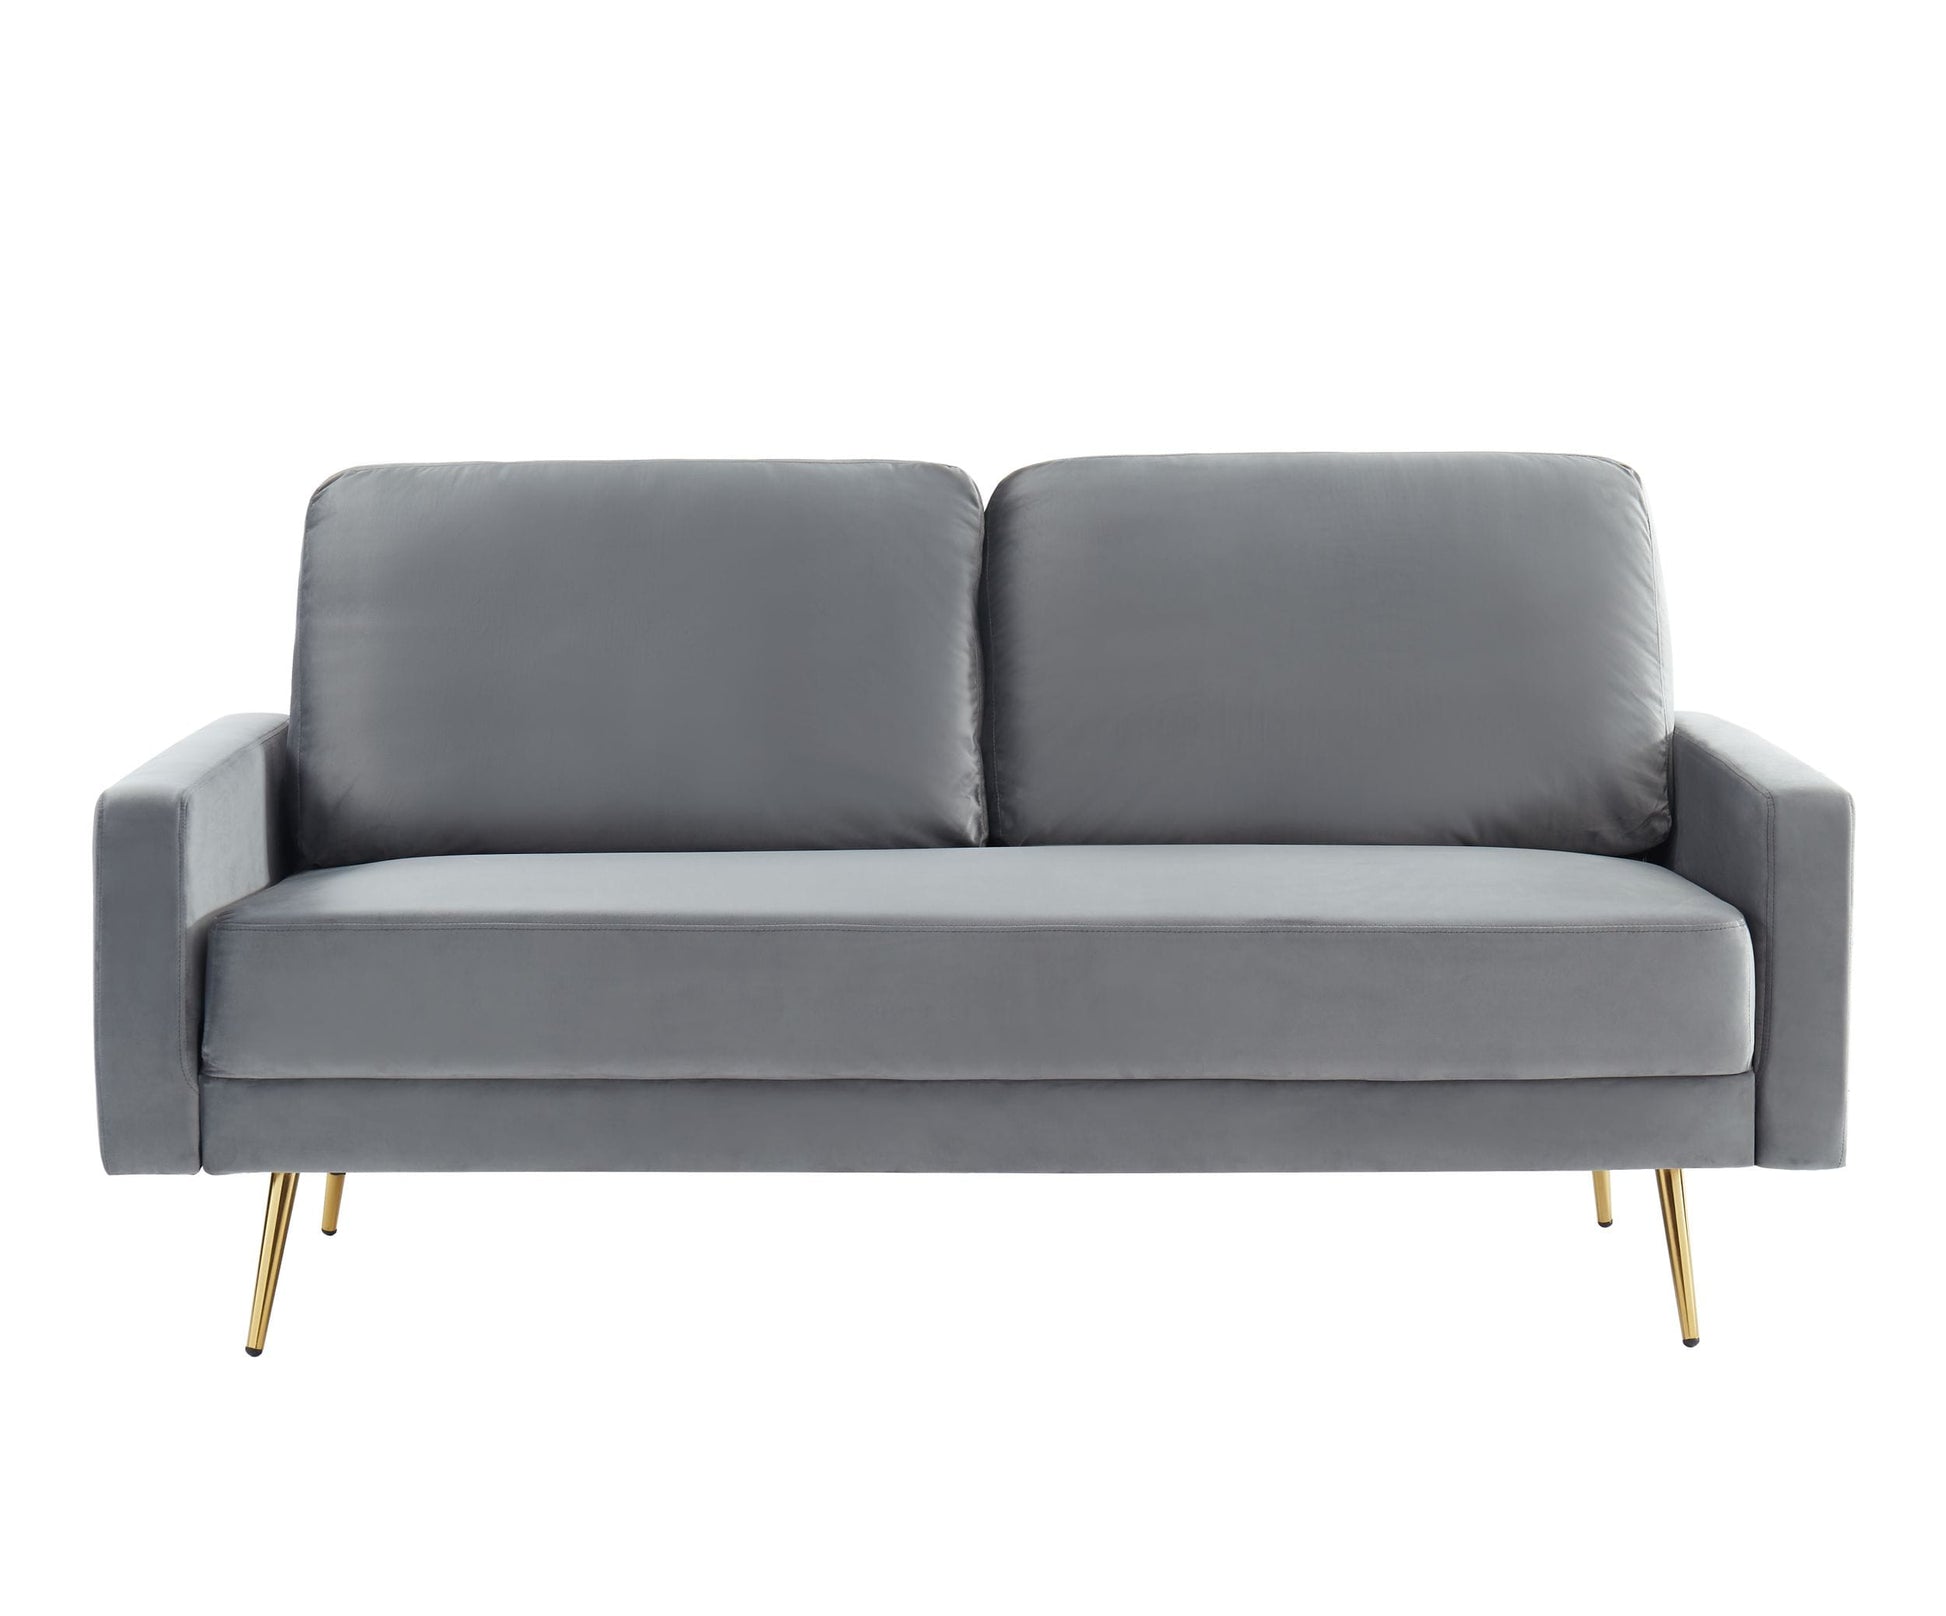 Divani Casa Huffine - Modern Grey Fabric Sofa-2